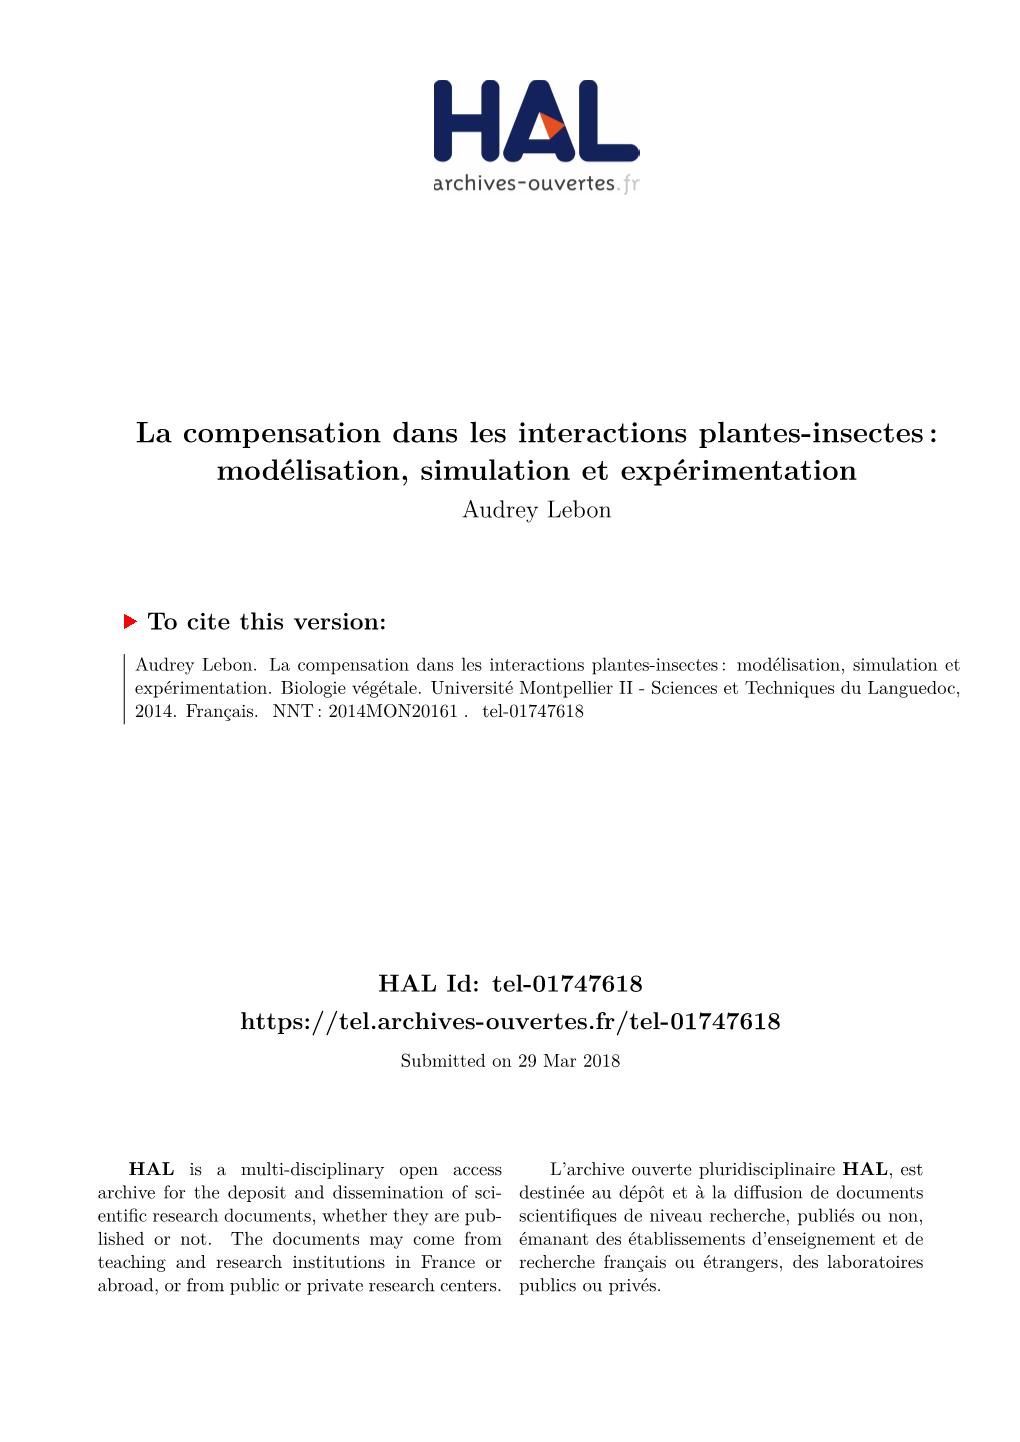 La Compensation Dans Les Interactions Plantes-Insectes : Modélisation, Simulation Et Expérimentation Audrey Lebon